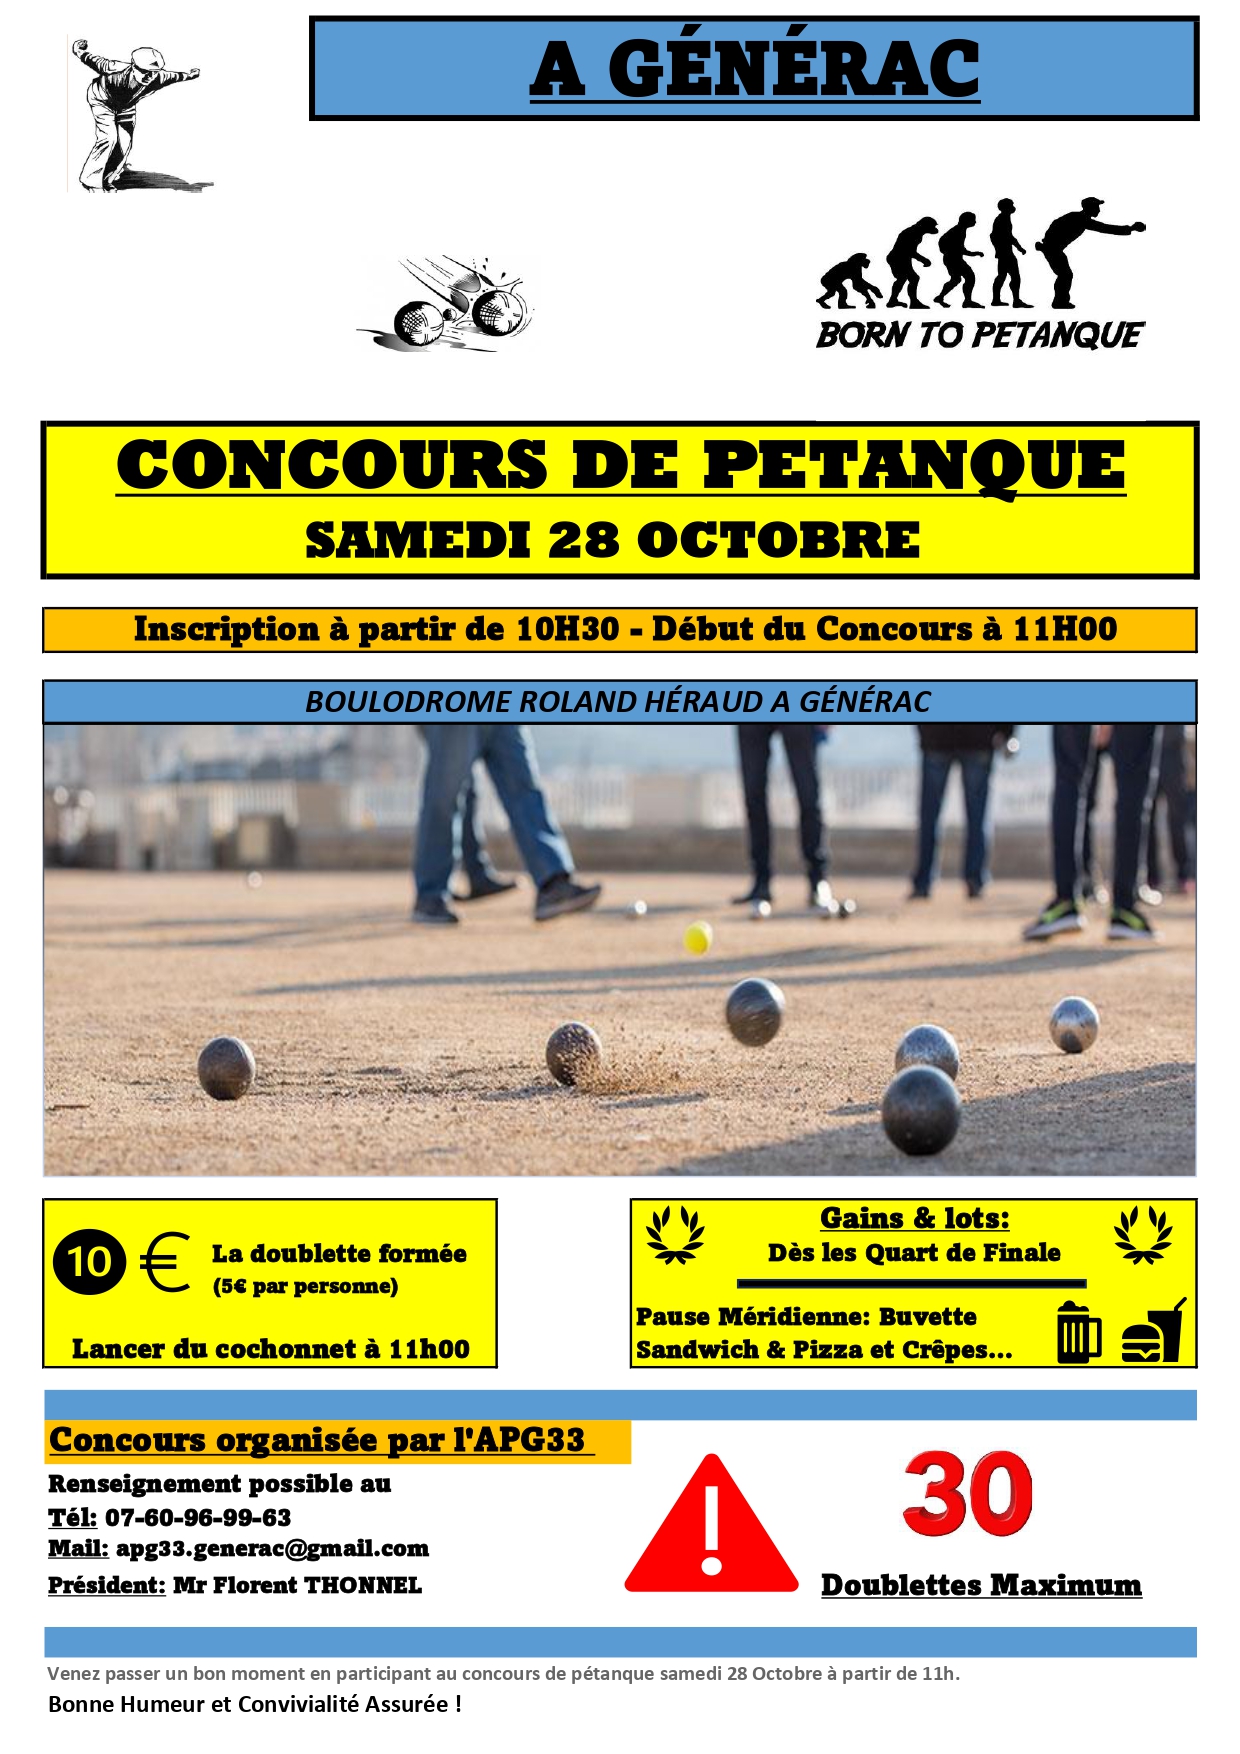 Concours de Pétanque - Evènement du club de pétanque APG33